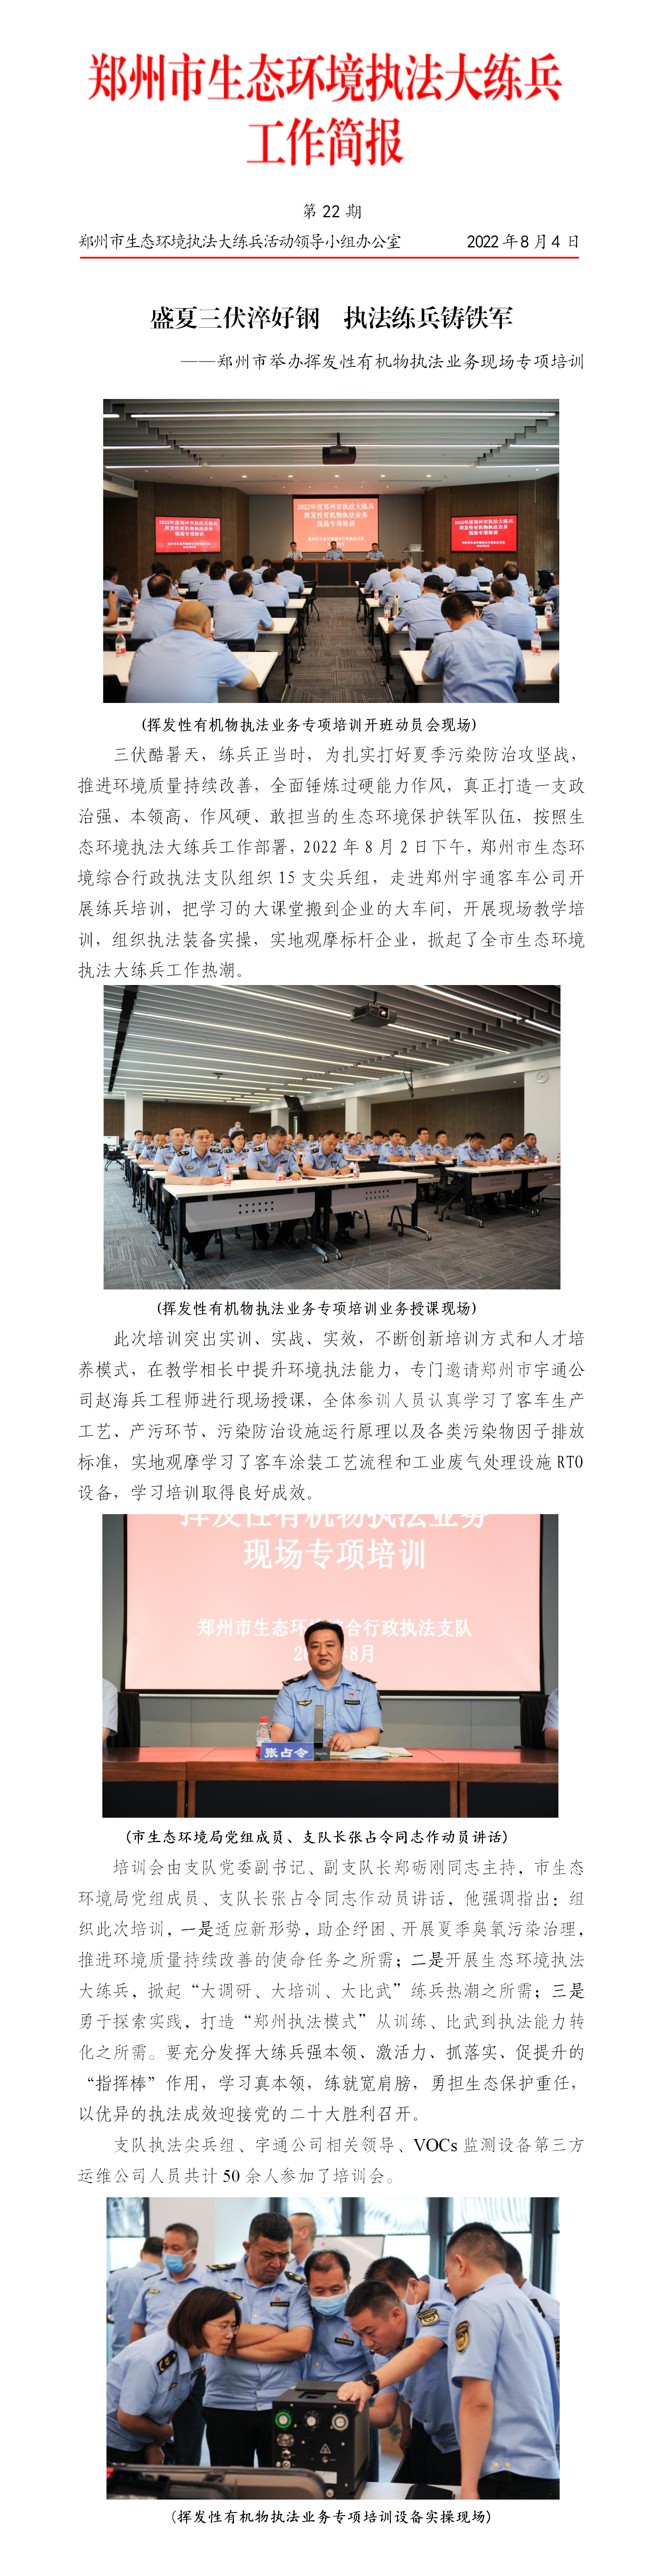 第22期 郑州市举办挥发性有机物执法业务现场专项培训_01.png